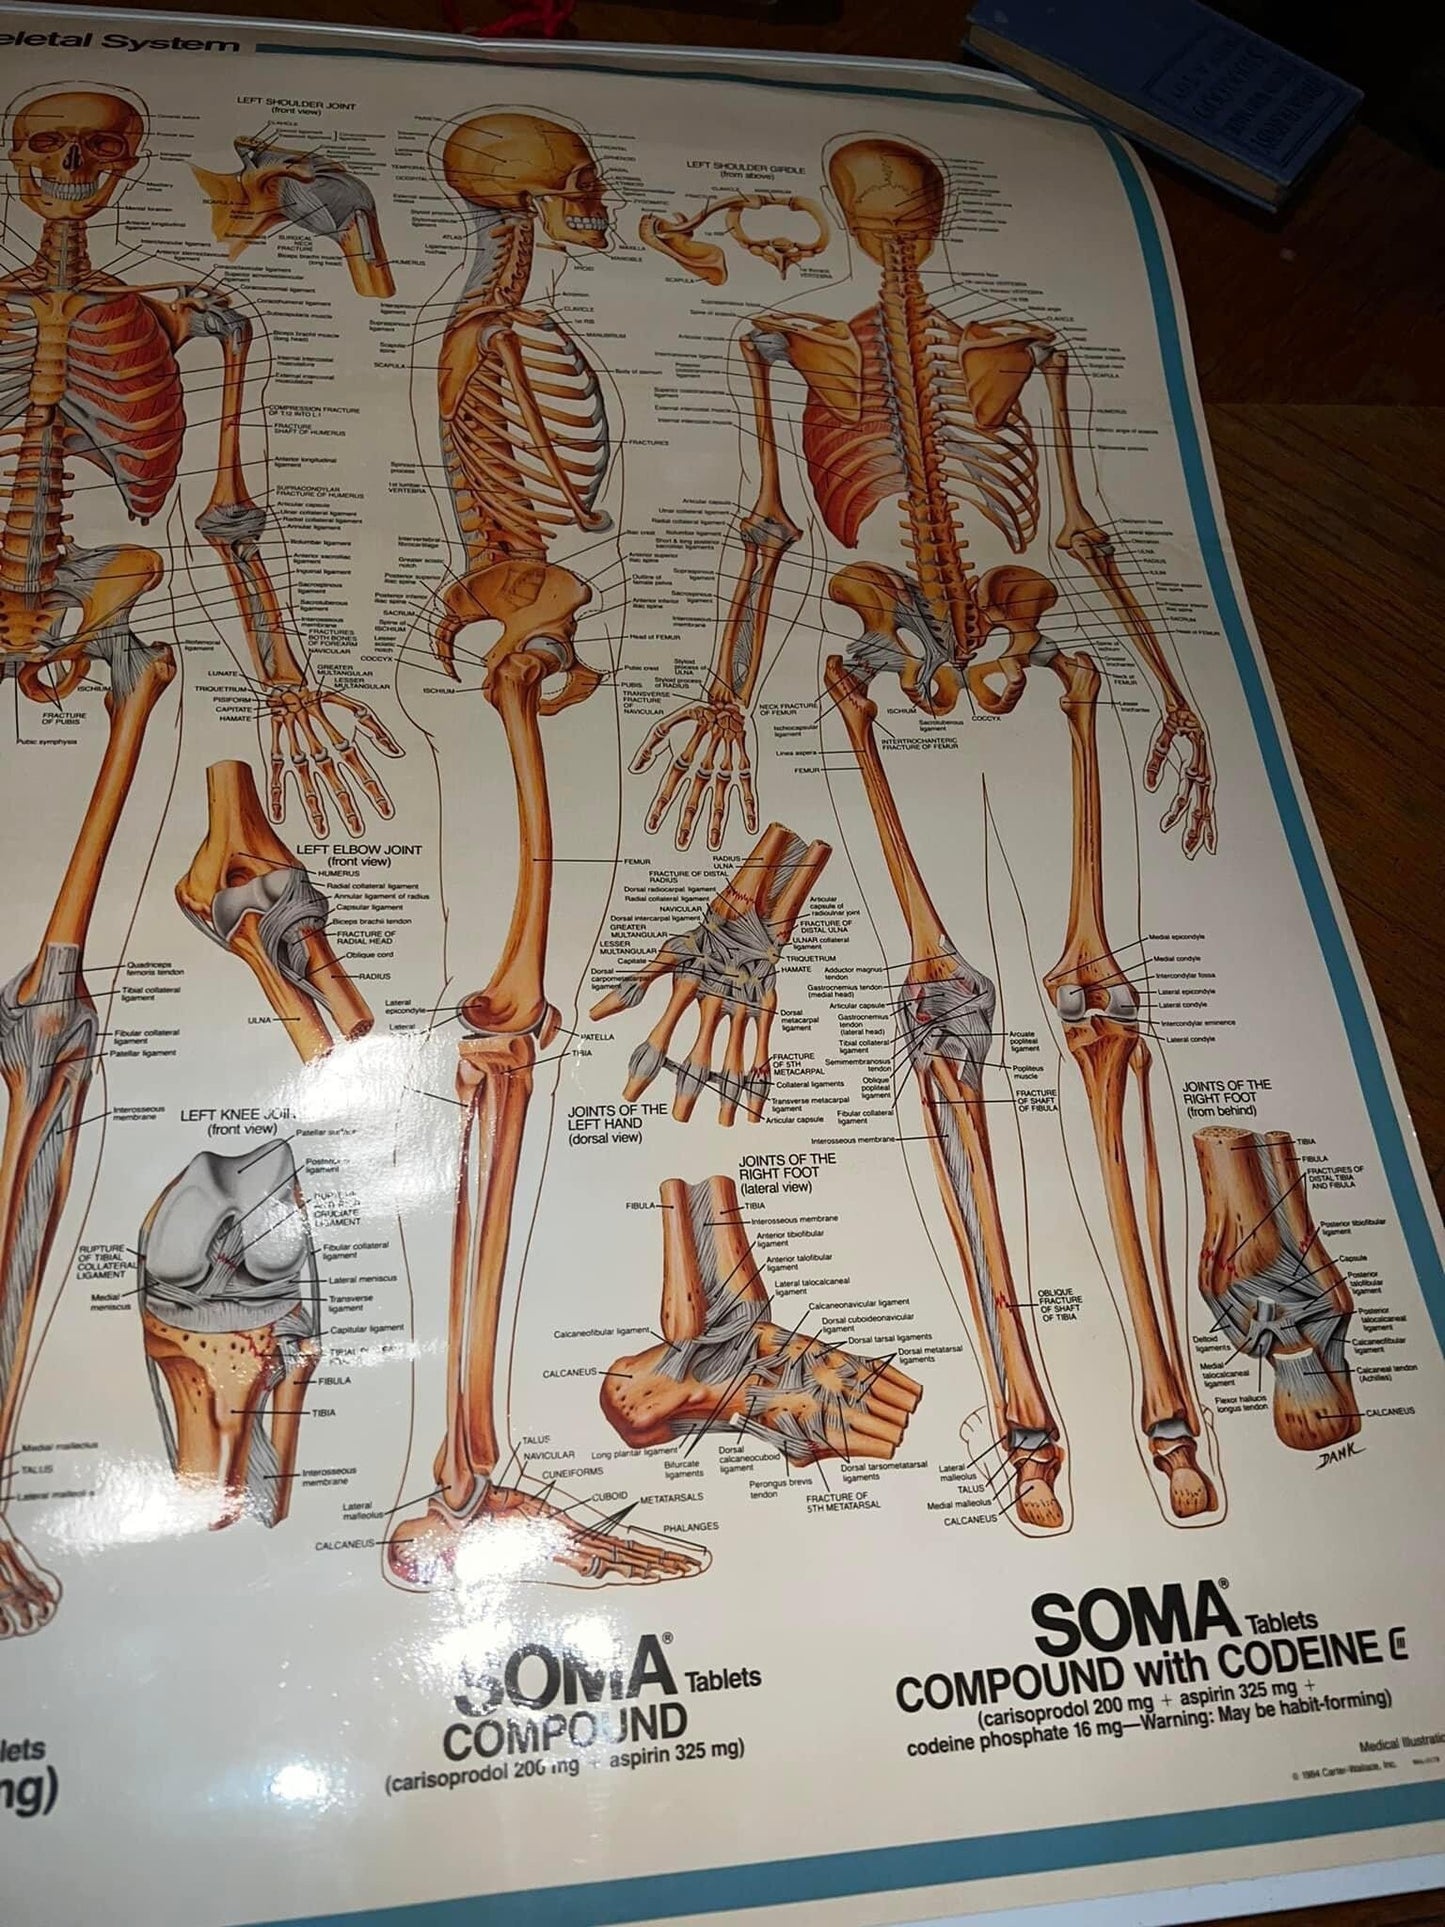 Vintage medical 1985 narcotic advertising Skeletal system Advertising for soma w codeine skeleton